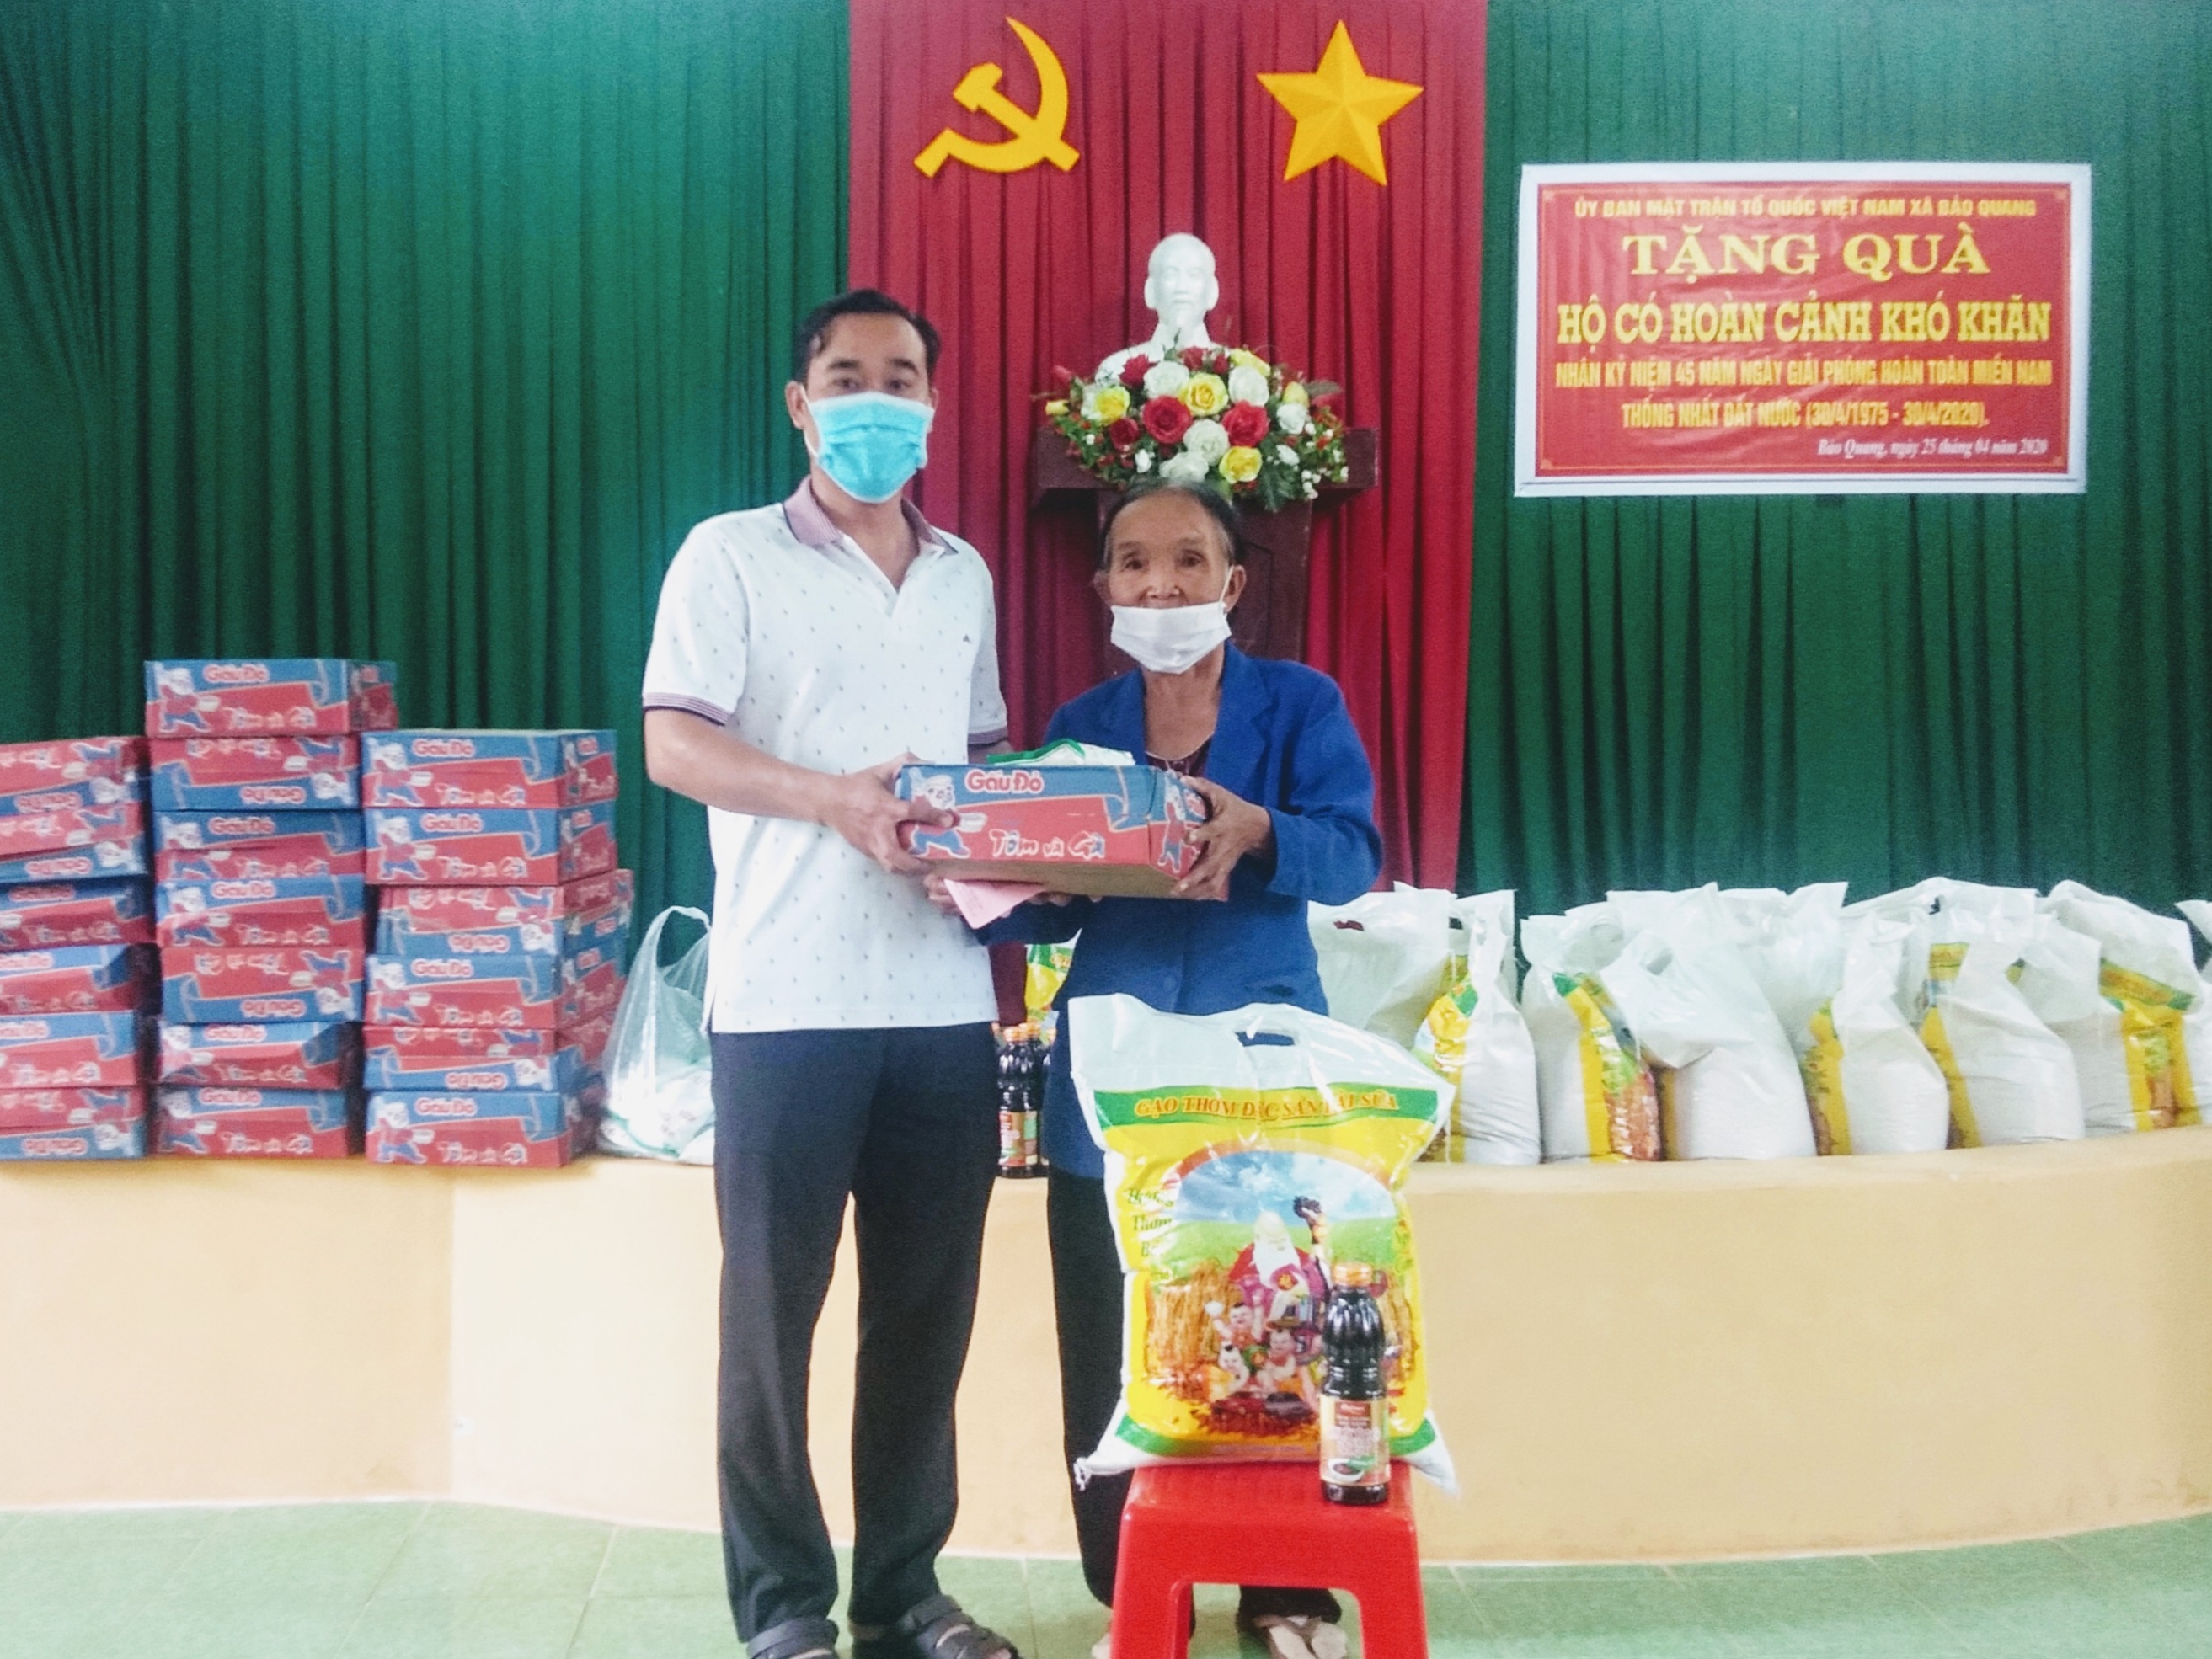 Ông Nguyễn Tiến Dũng, Phó Chủ tịch UBND xã trao quà cho hộ có hoản cảnh khó khăn (3).jpg